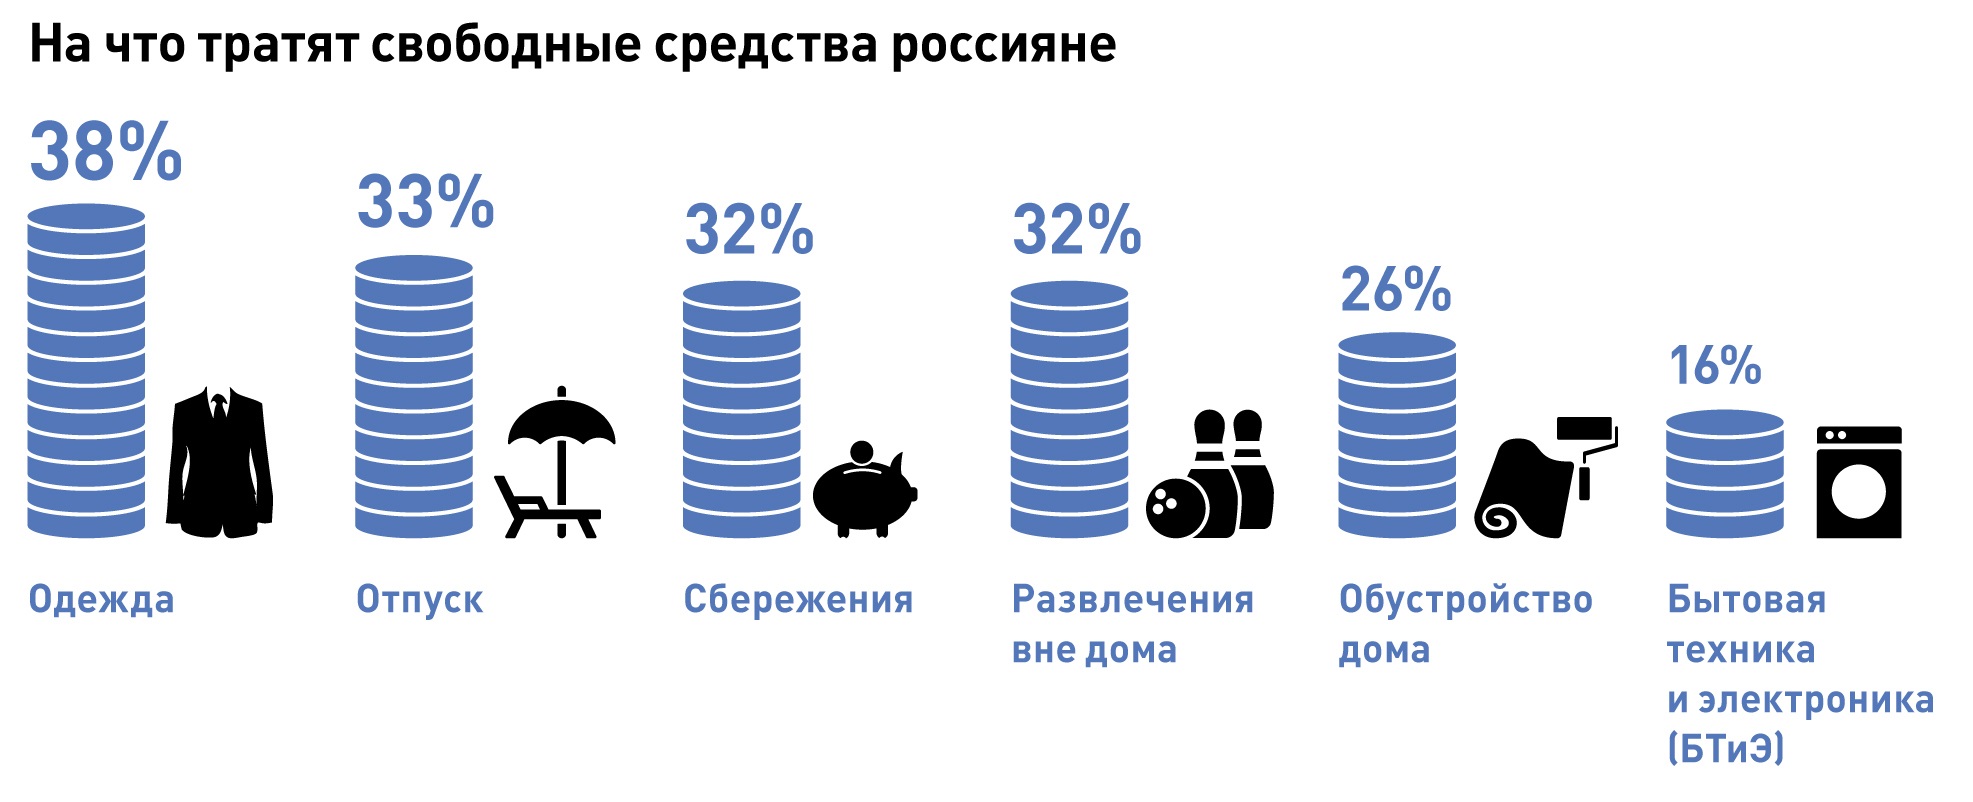 Куда тратить. На что люди тратят деньги. Тратить деньги. На что тратят россияне. Статистика траты денег в России.